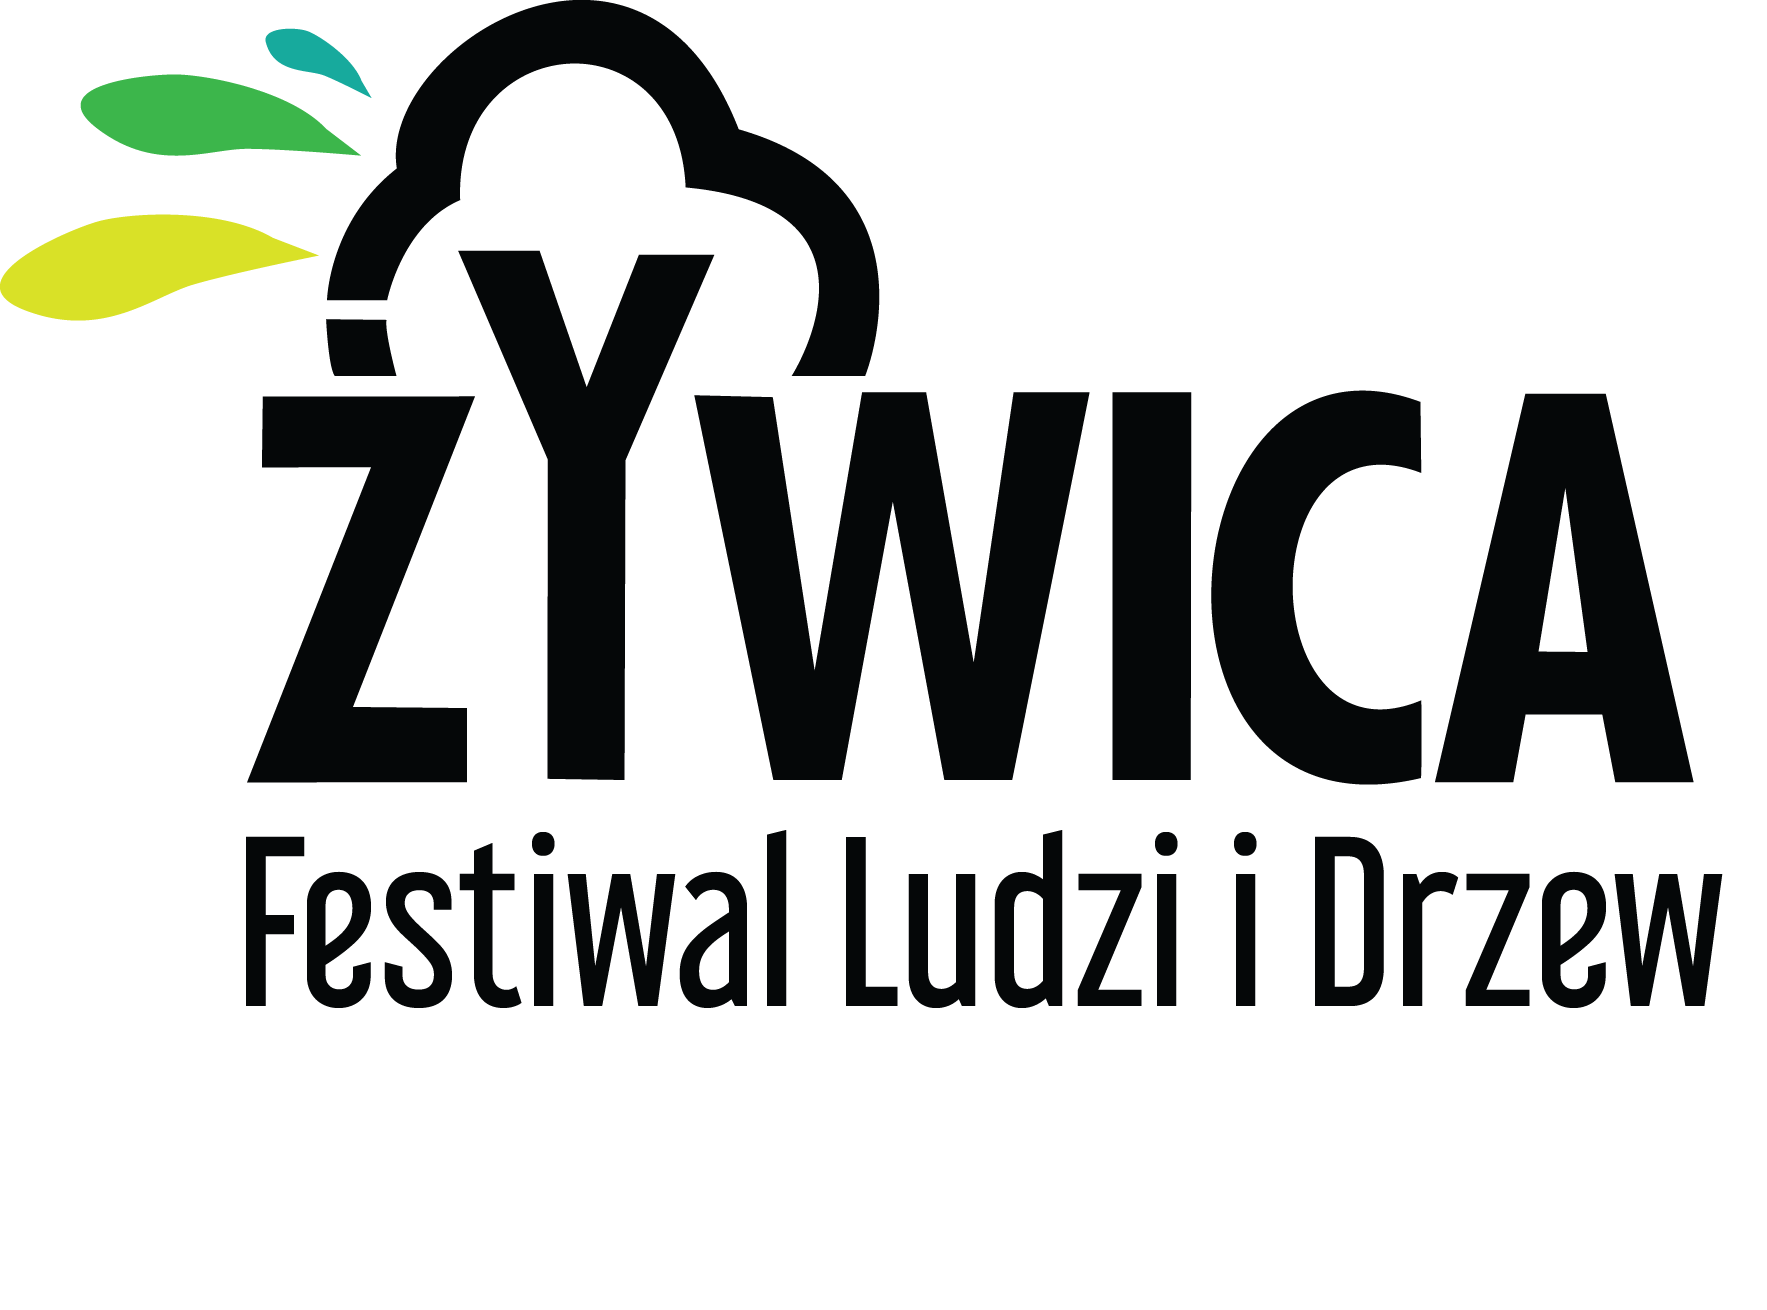 Festiwal Żywica